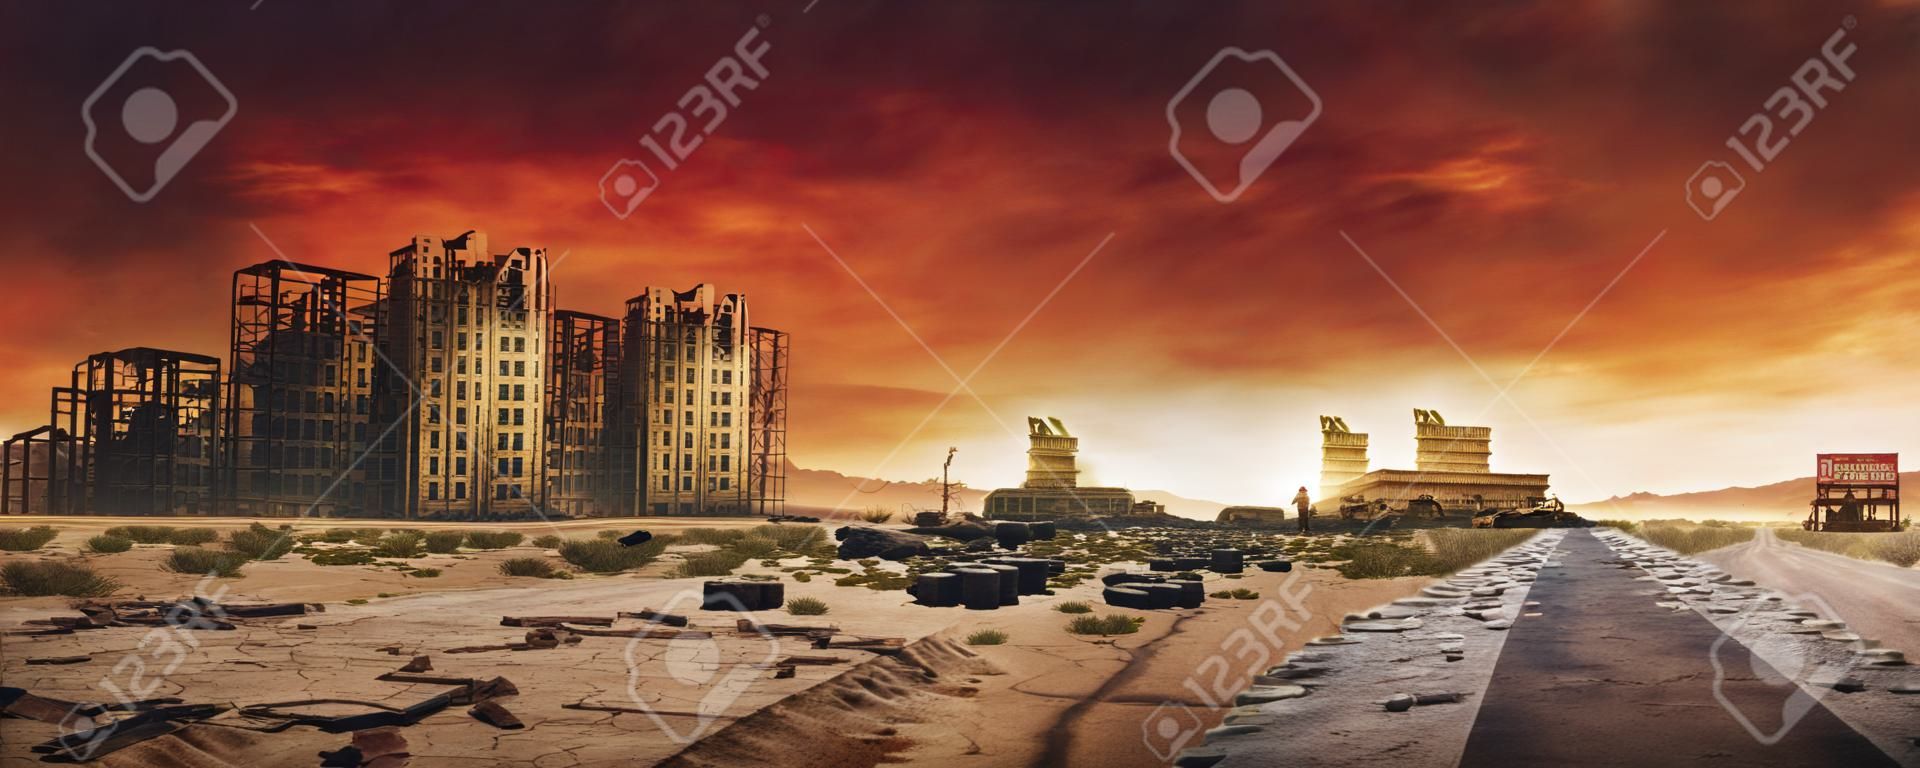 放棄され破壊された建物、ひびの入った道路と標識のある砂漠都市の荒れ地の終末論的な背景画像の夕方。